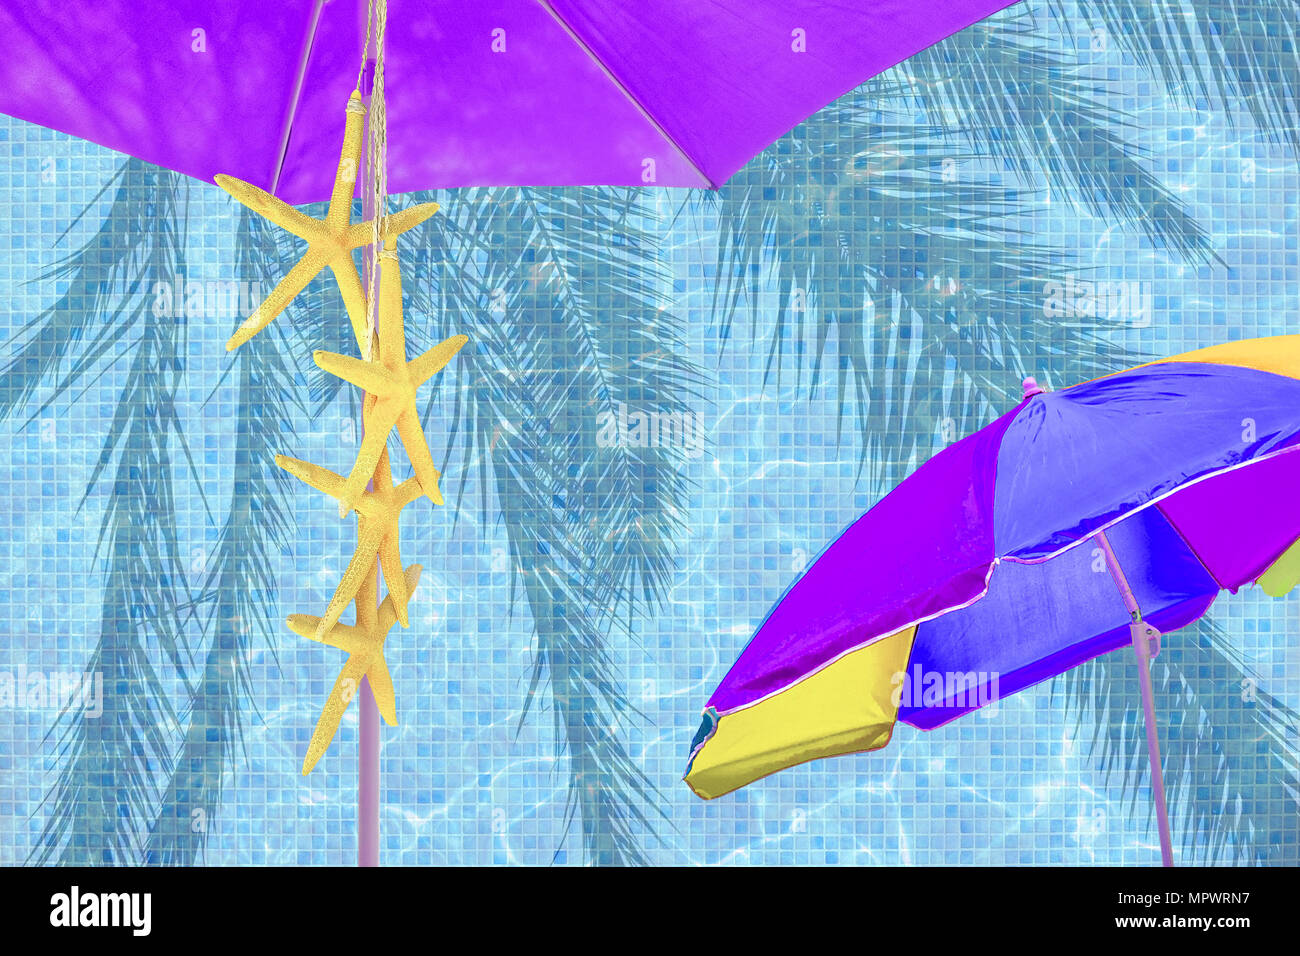 Parasol púrpura amarillo starfish humor verano azul de fondo el espacio publicitario Foto de stock